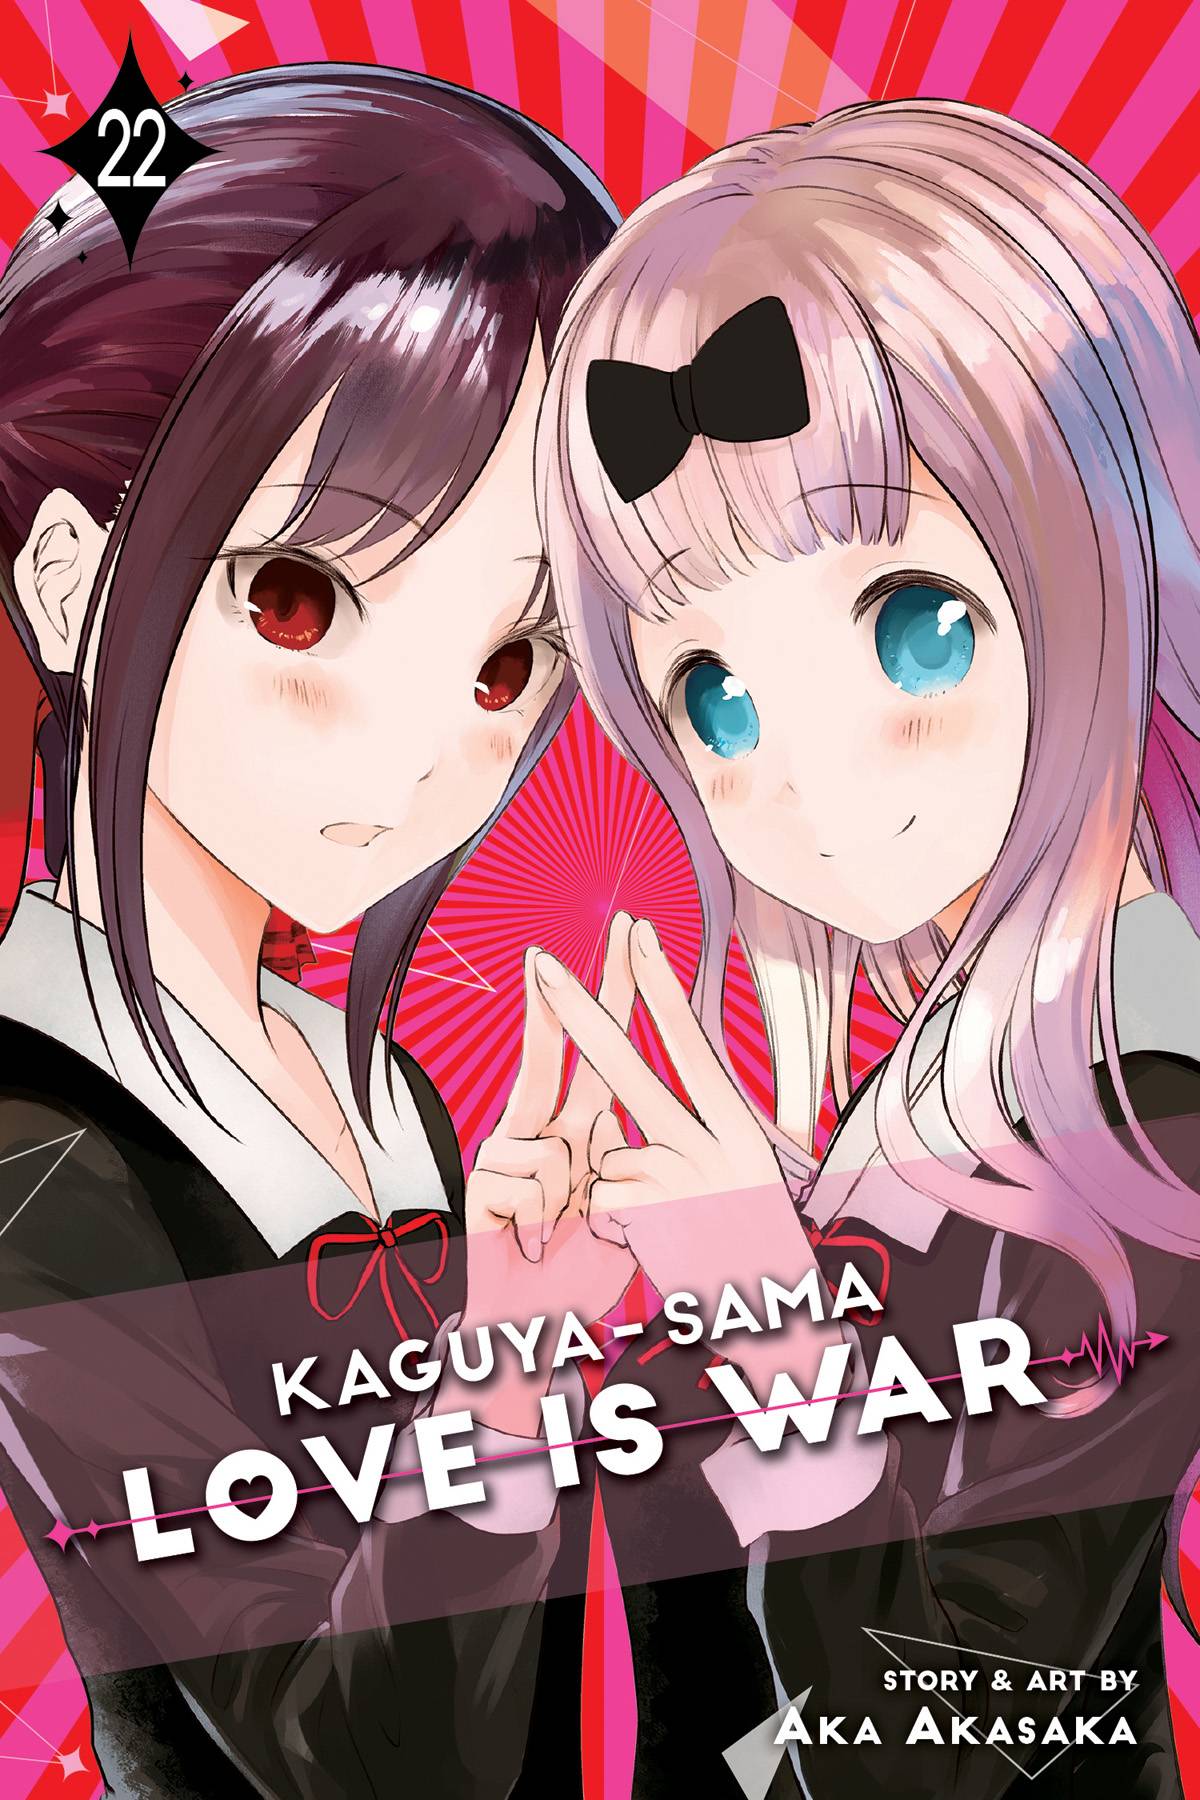 Kaguya-Sama: Love Is War Volume 22